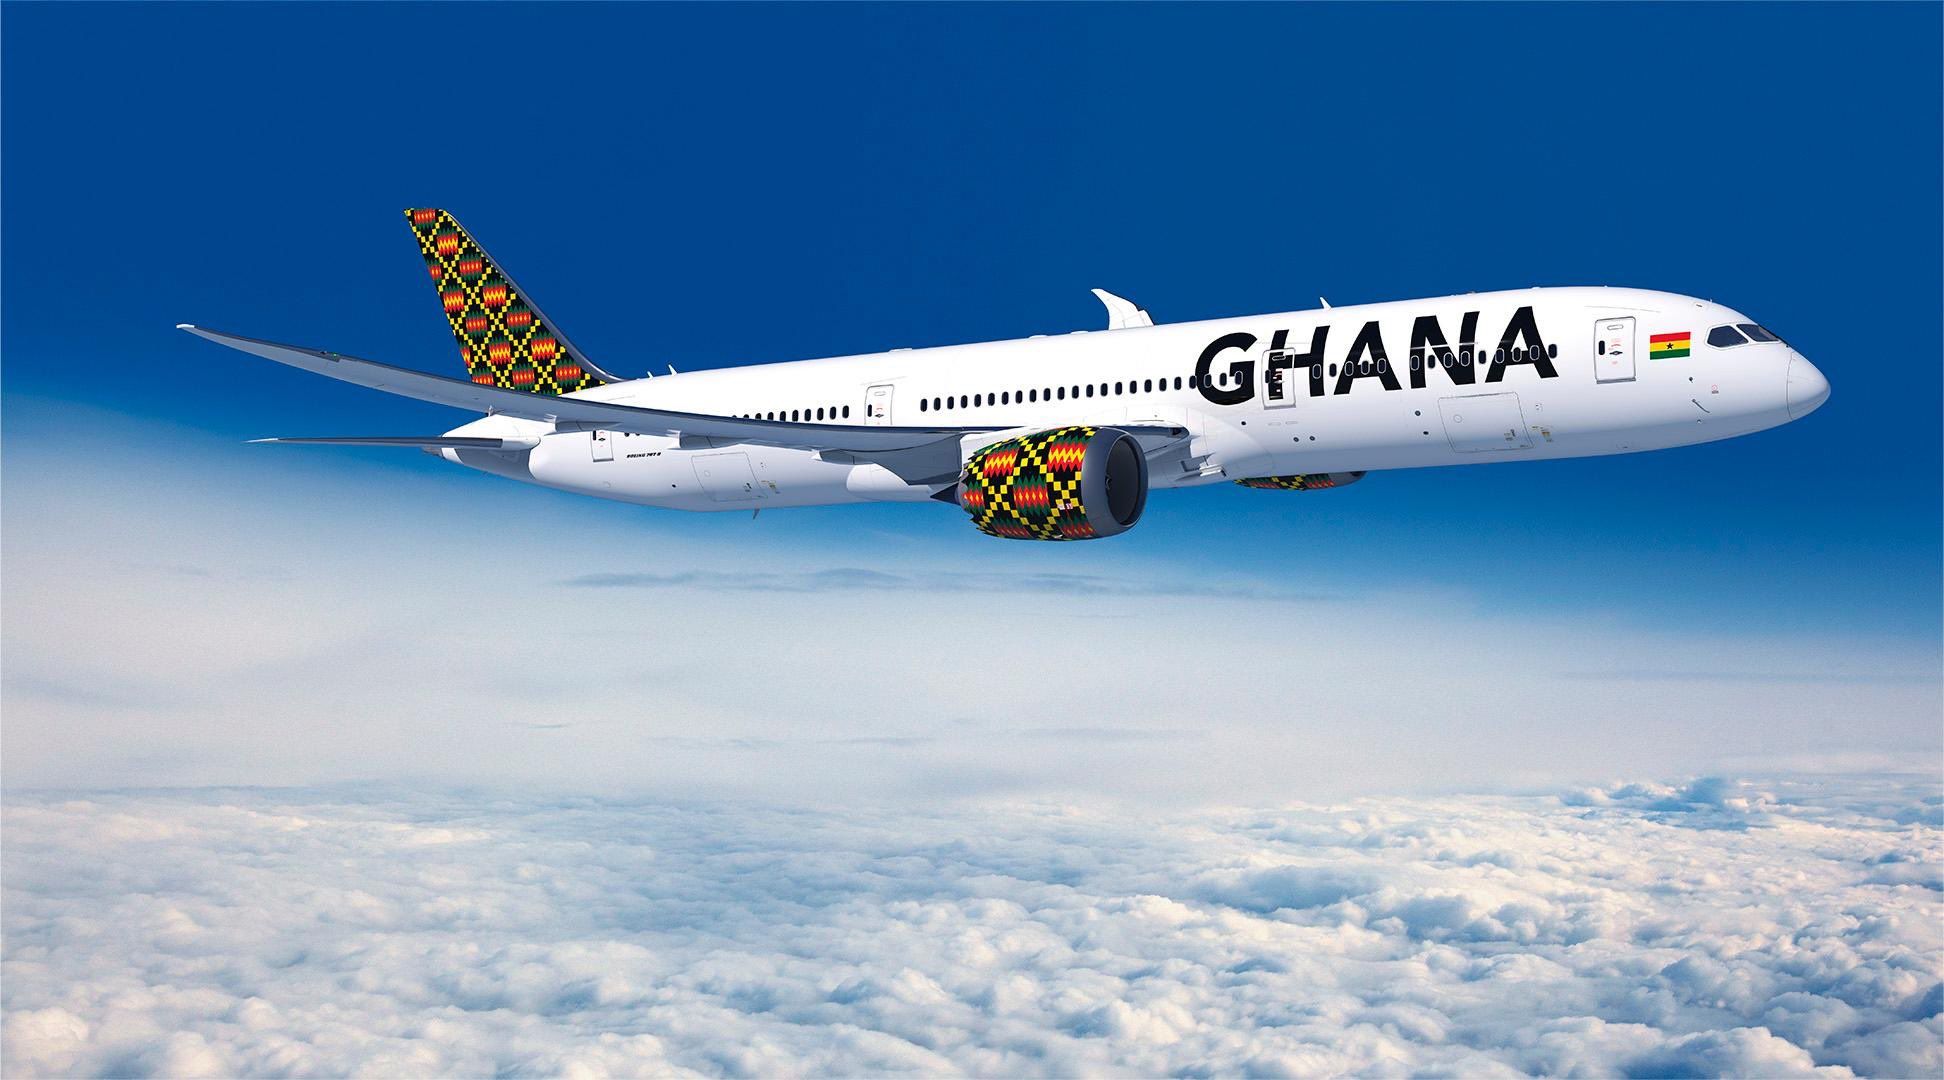 Ghana Airlines Boeing 787